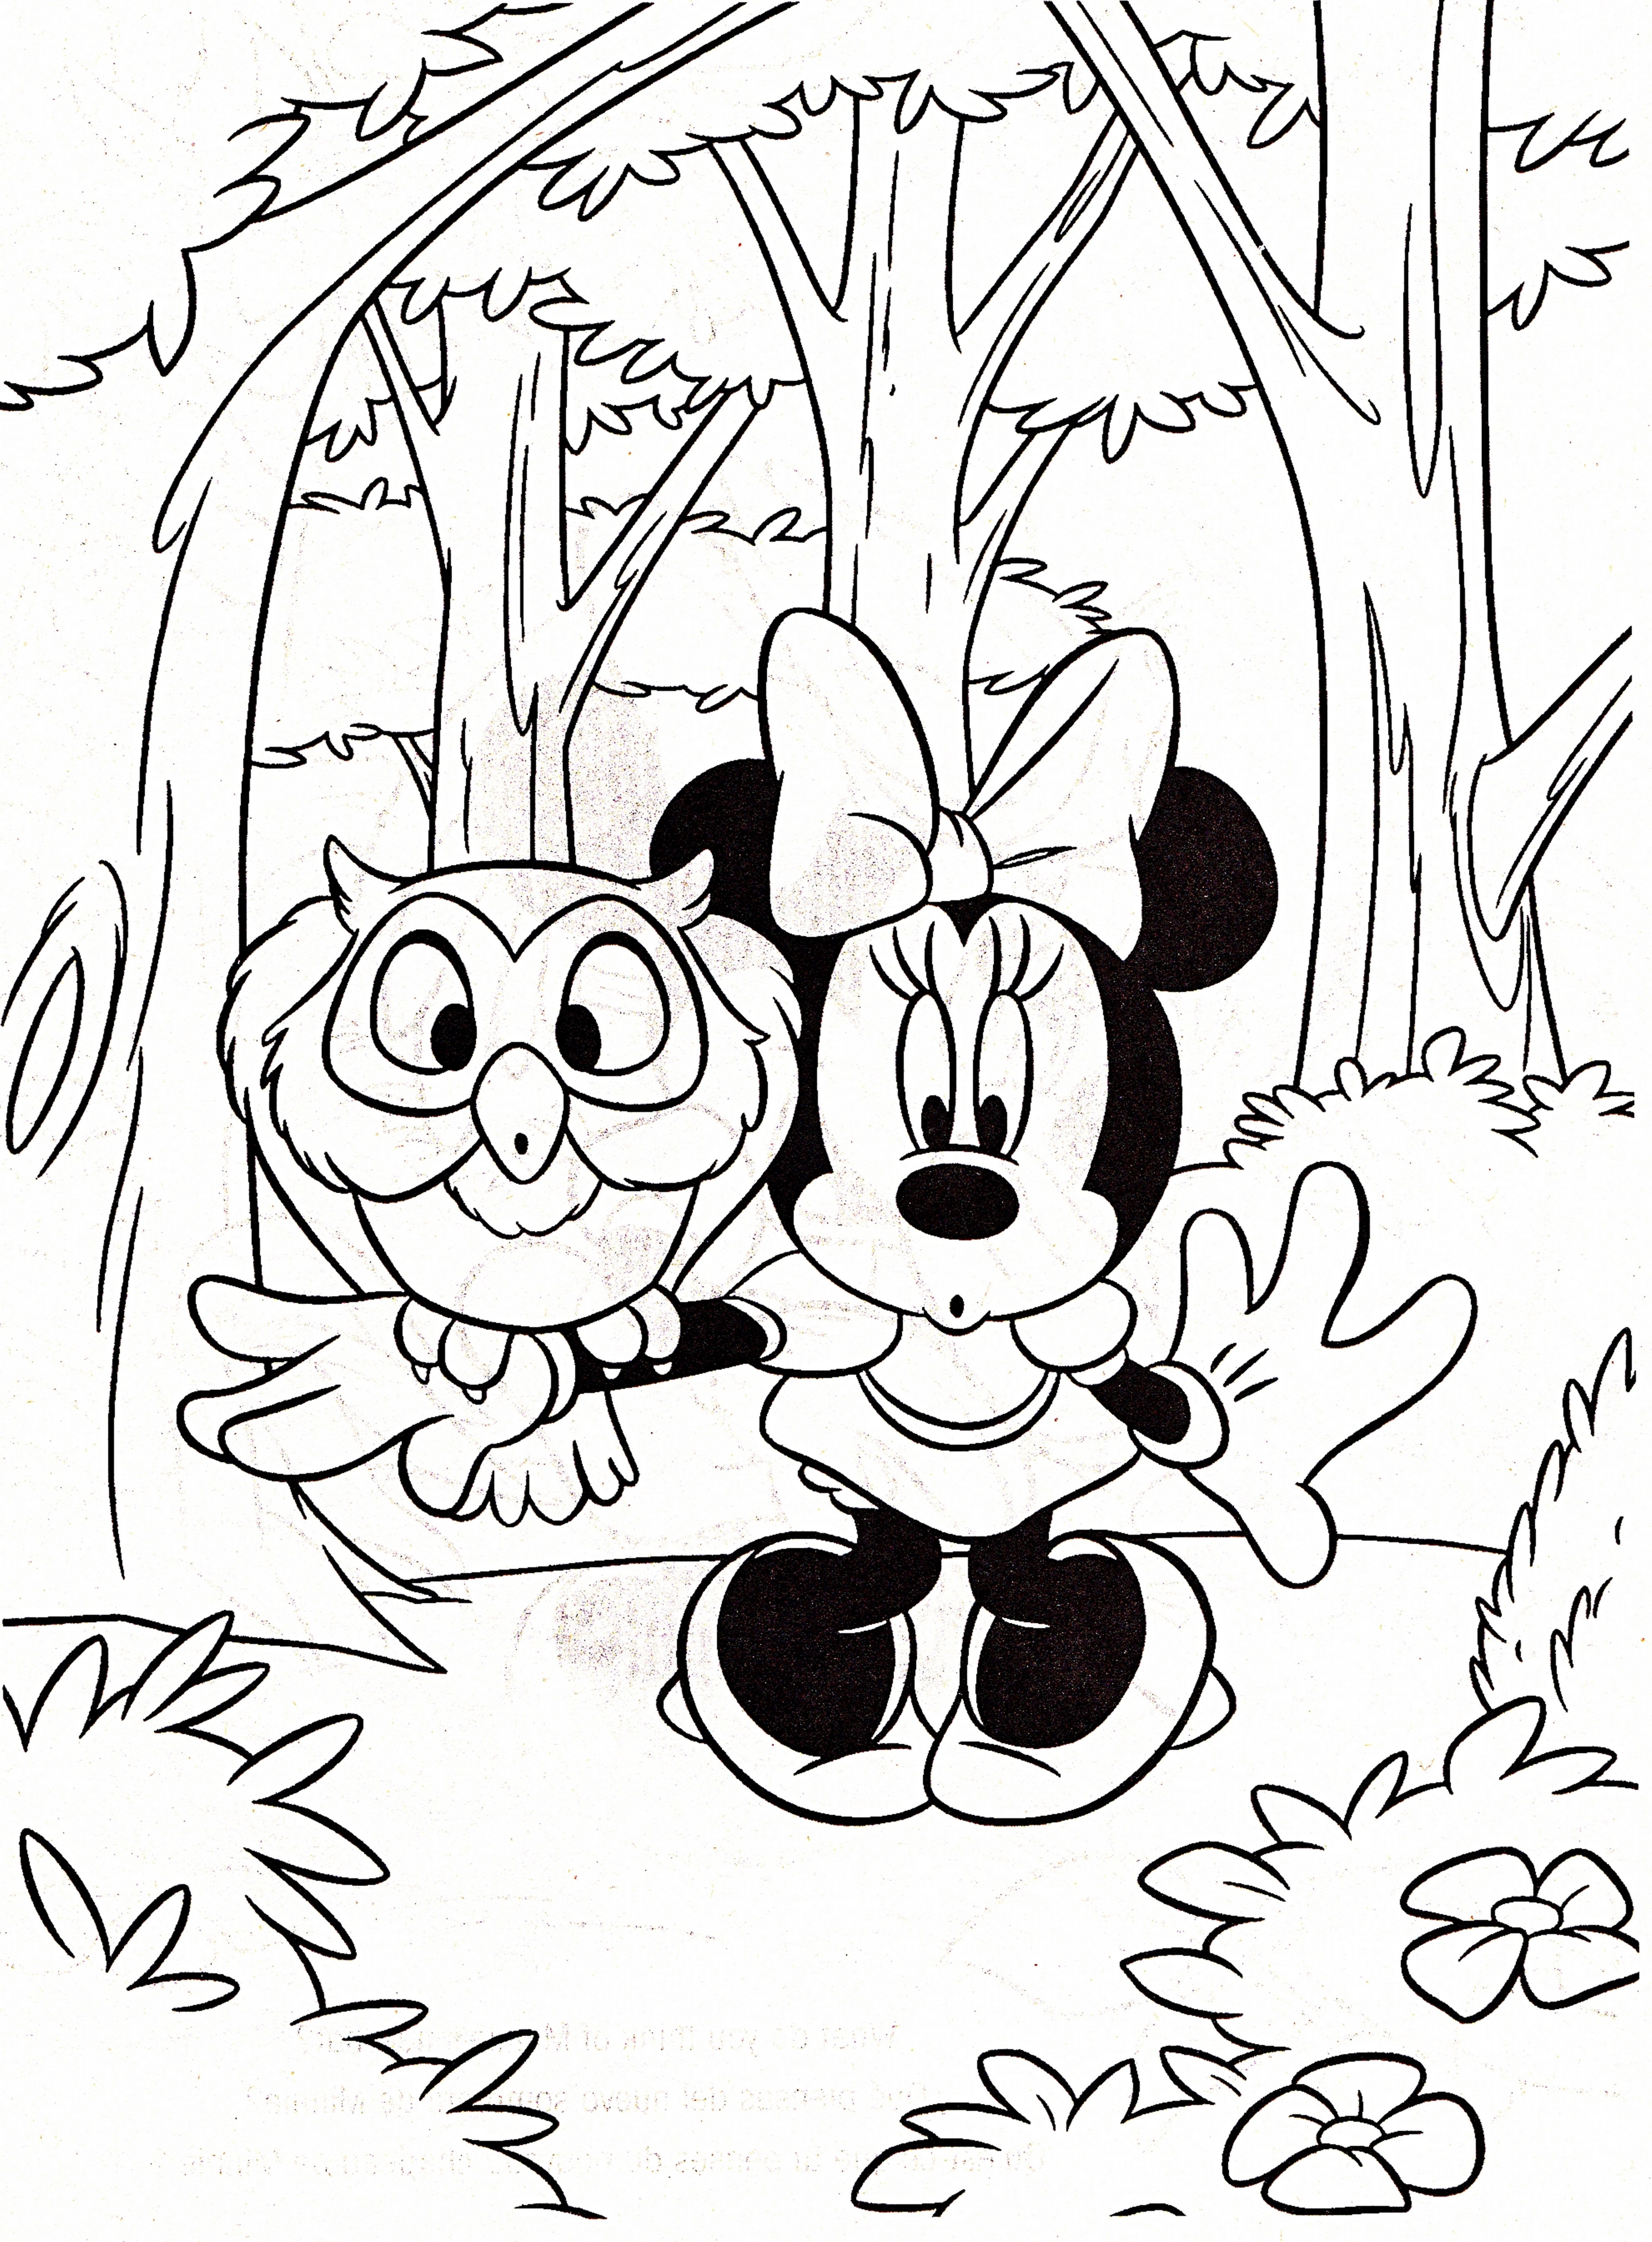 Walt Disney Coloring Pages - Minnie Mouse - Walt Disney ...